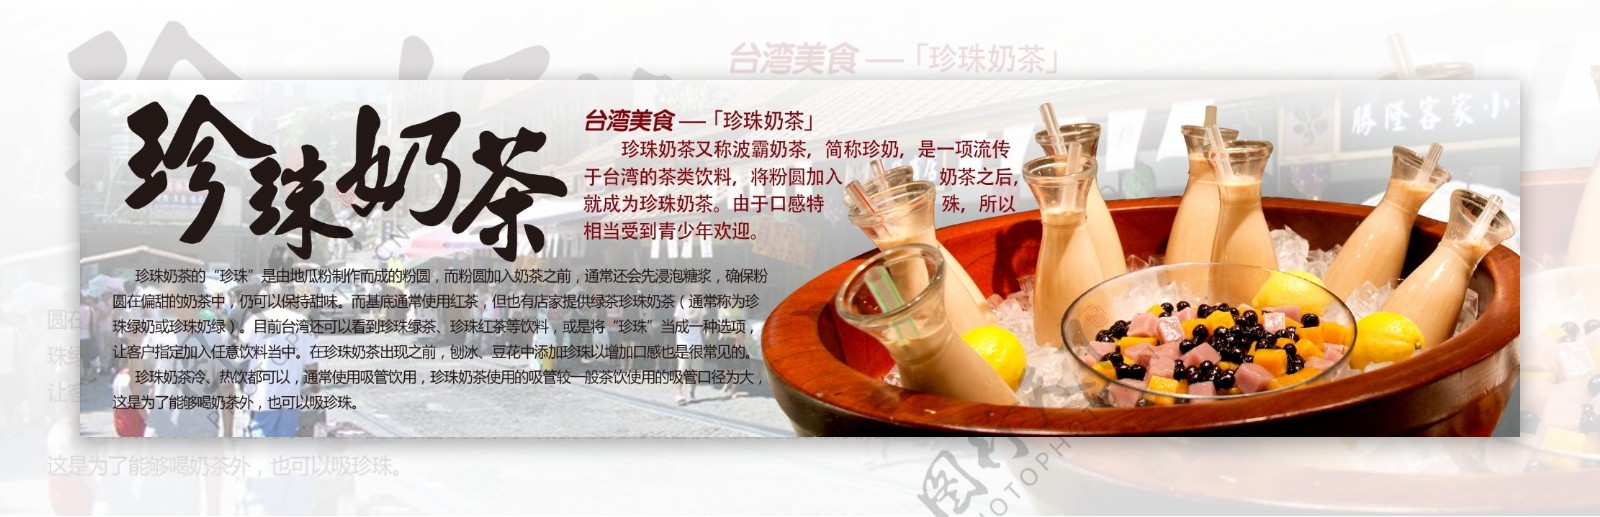 台湾美食节特色饮品珍珠奶茶图片